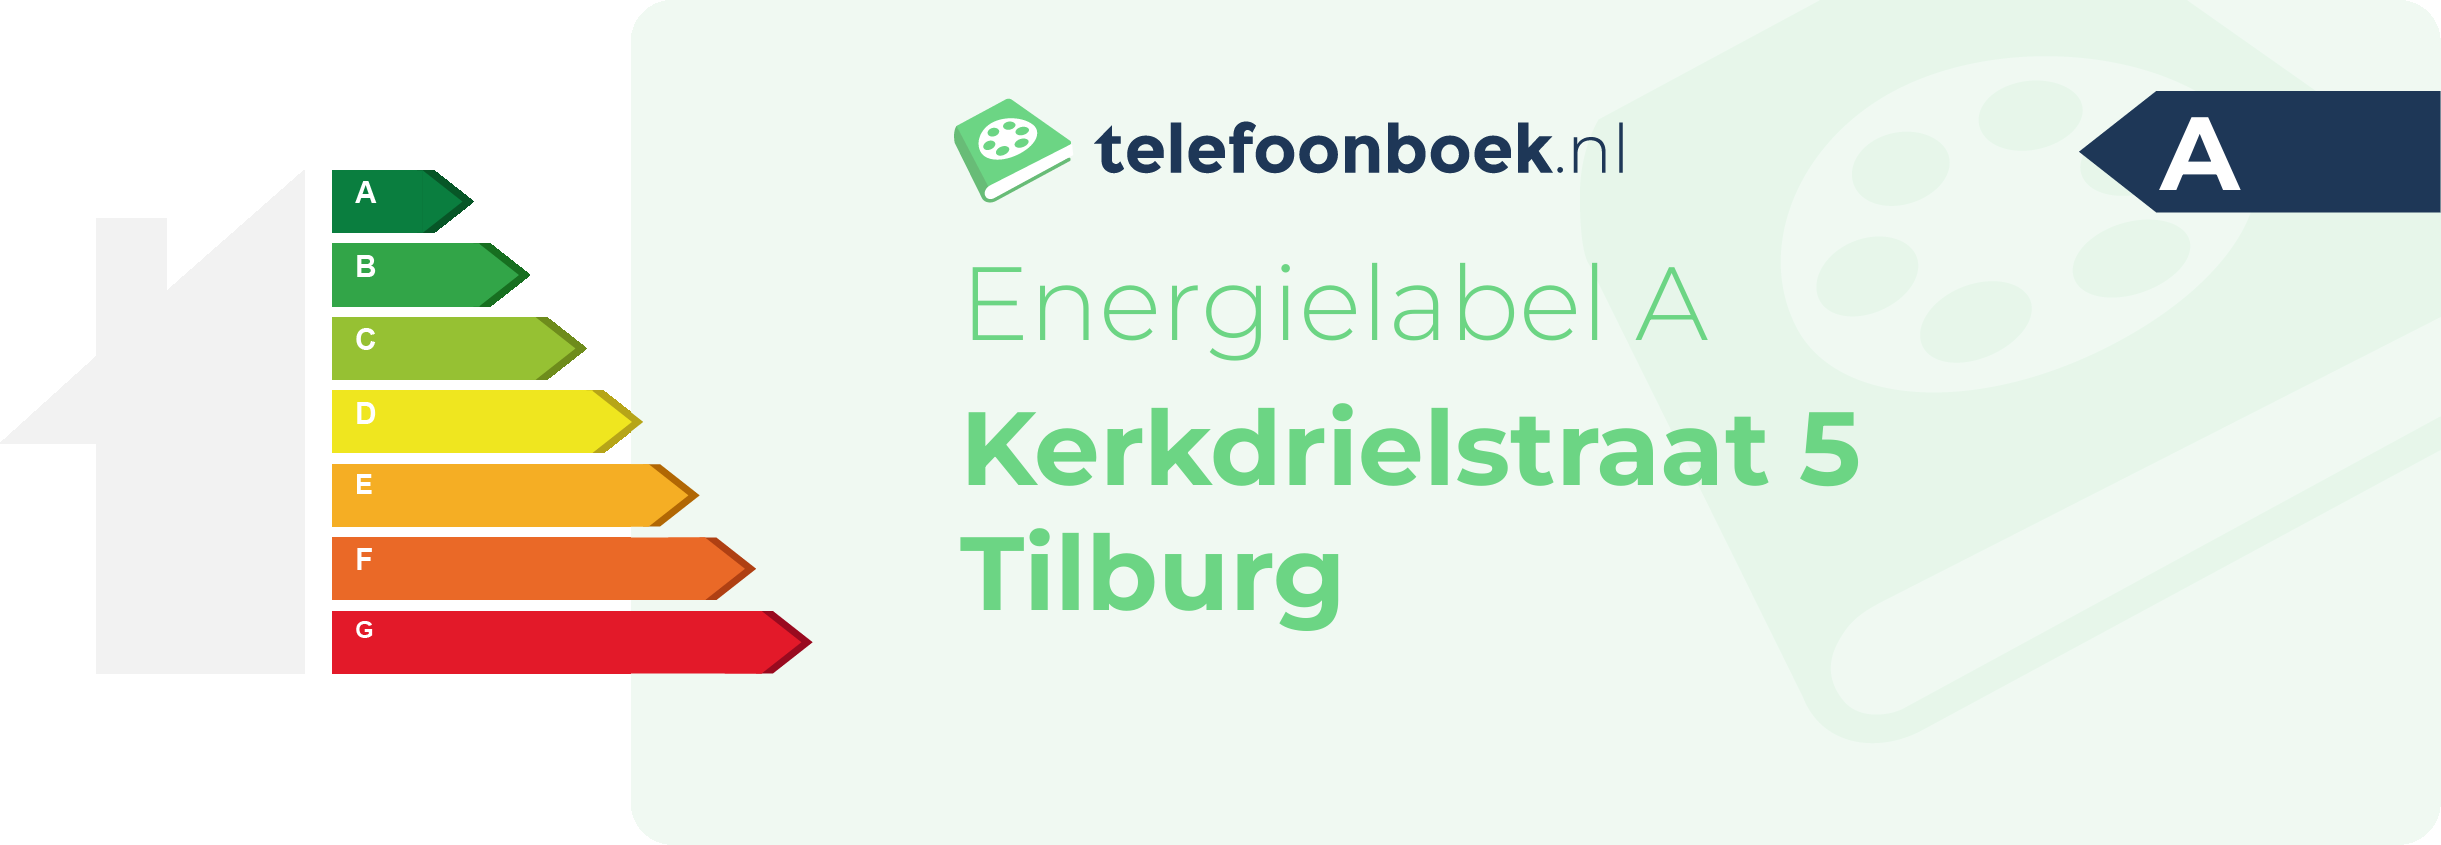 Energielabel Kerkdrielstraat 5 Tilburg